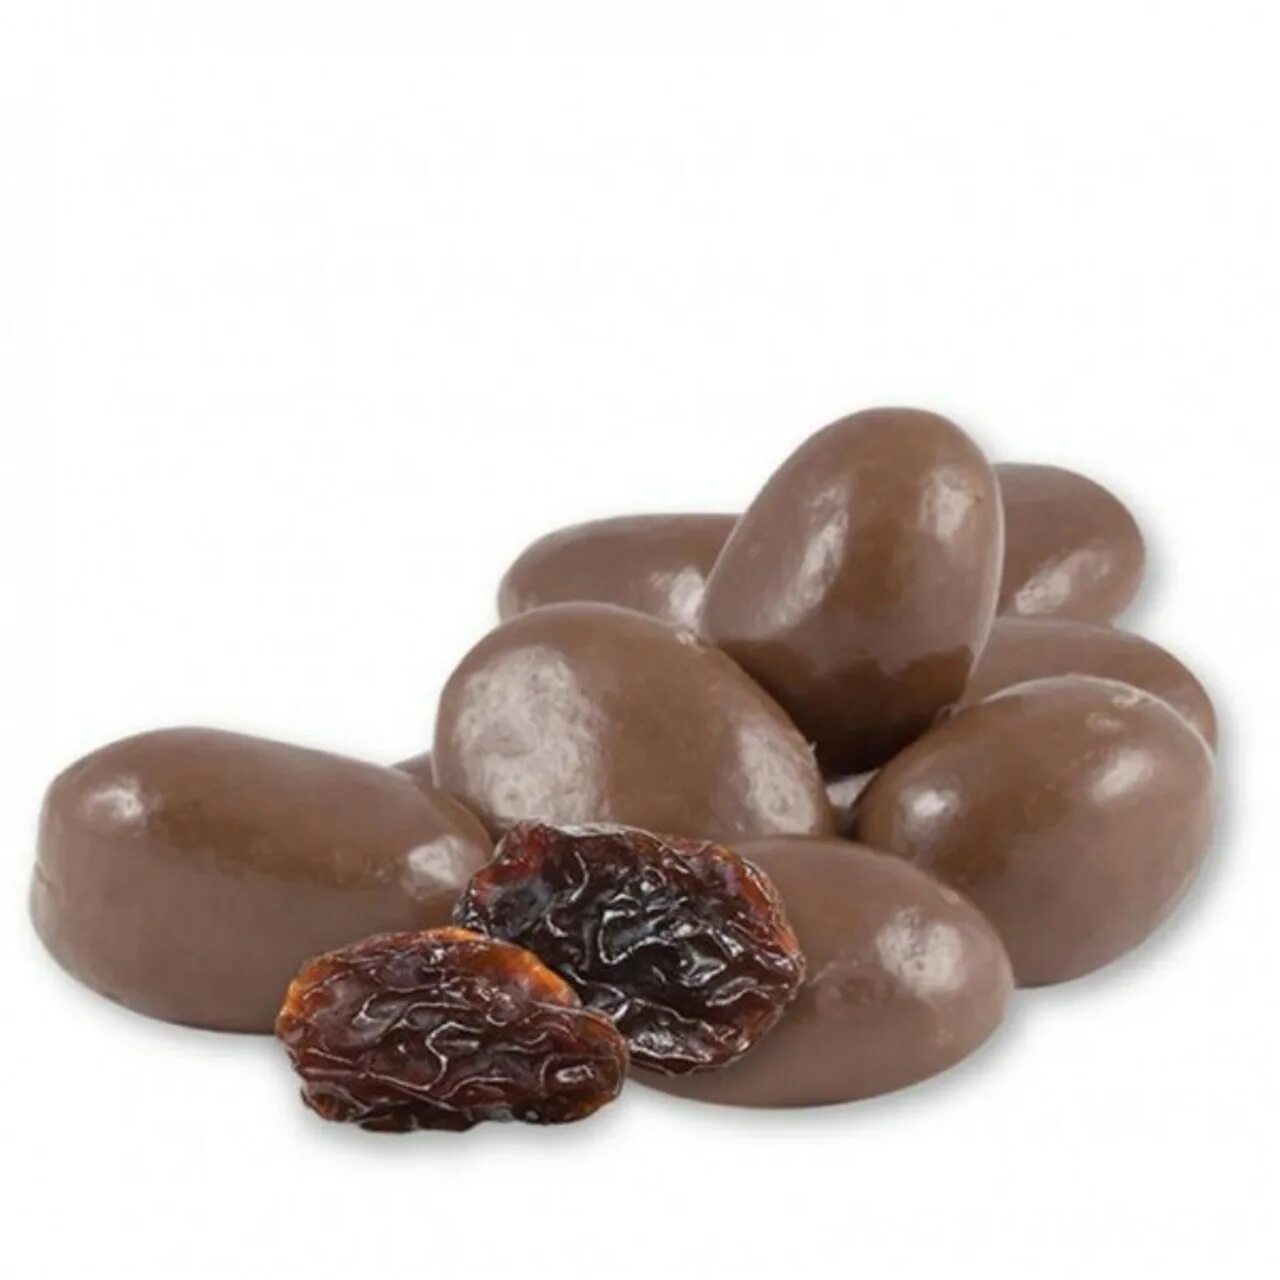 Цена шоколадной глазури. Изюм в шоколаде Raisins. Драже Изюм джамбо в бельгийском Молочном шоколаде (премиум). Изюм в шоколадной глазури. Конфеты Изюм в шоколаде.